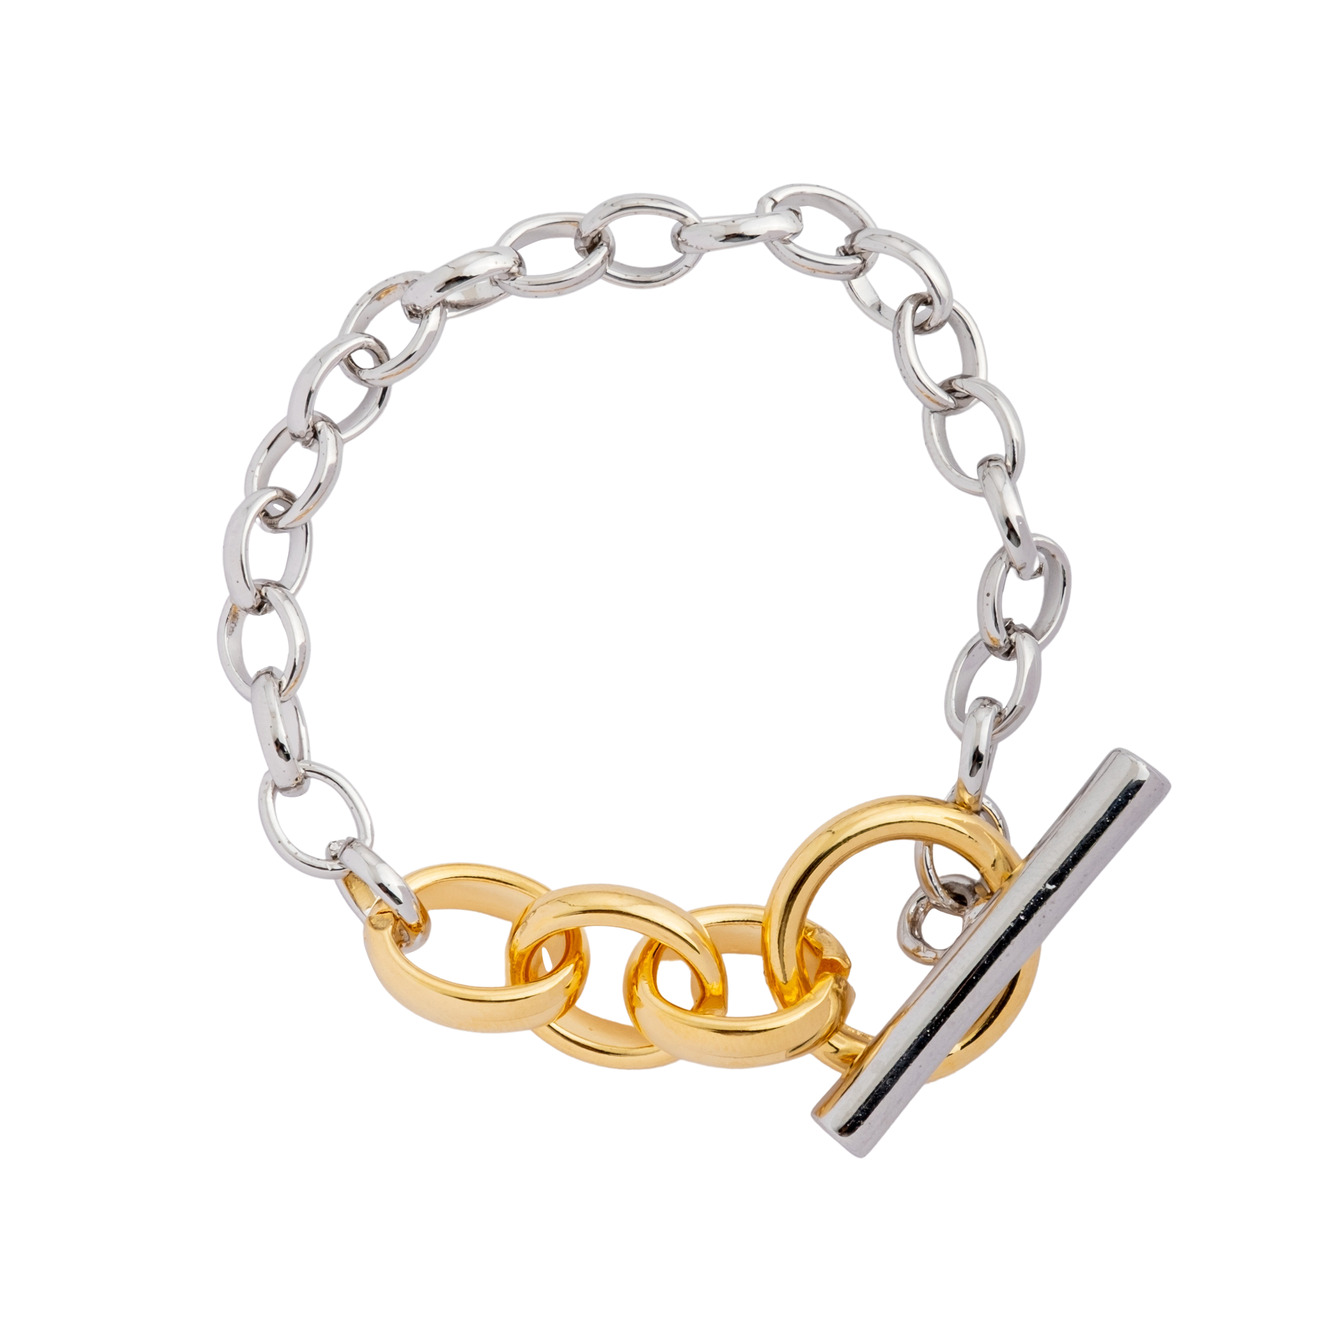 Aqua Серебристый браслет-цепь с золотистым замком цена и фото